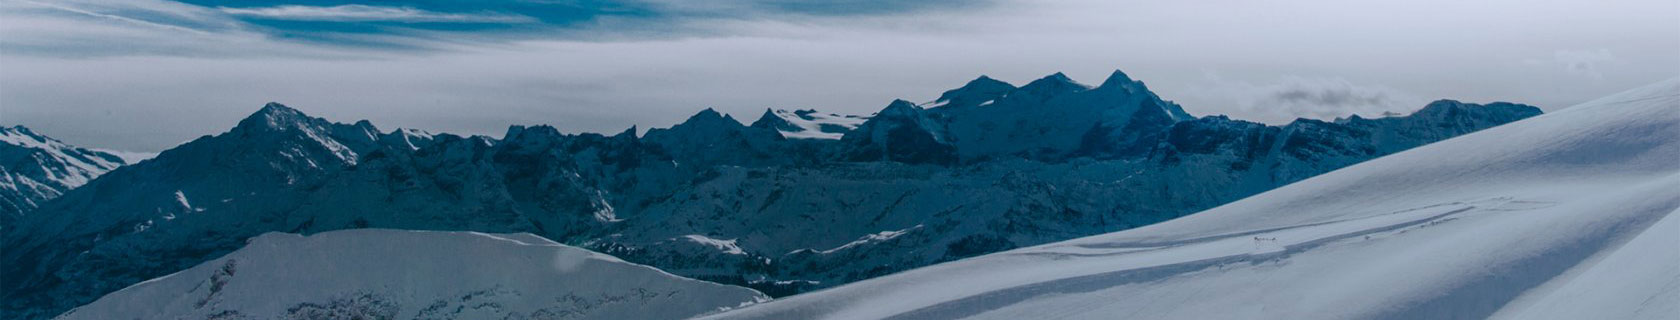 SNOWRIDER появится в мировой серии фильмов TRAX